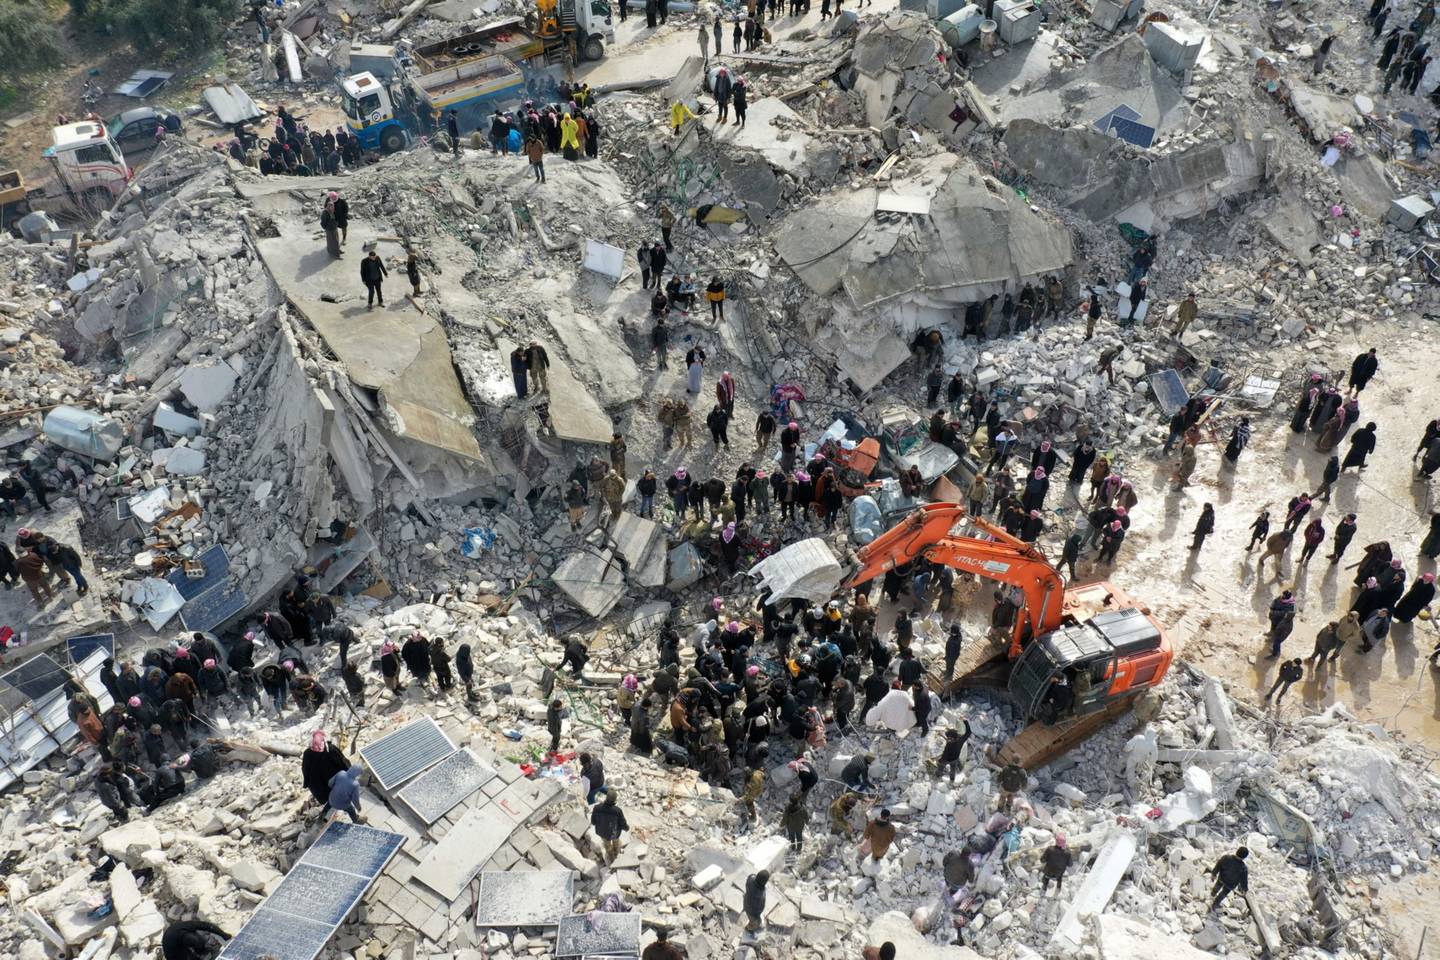 Una vista aérea muestra a los residentes, ayudados por equipos pesados, buscando víctimas y supervivientes entre los escombros de los edificios derrumbados tras un terremoto en la localidad de Besnia, en el noroeste de Siria, fronteriza con Turquía (Foto: Omar Haj Kadour/AFP/Getty Images)